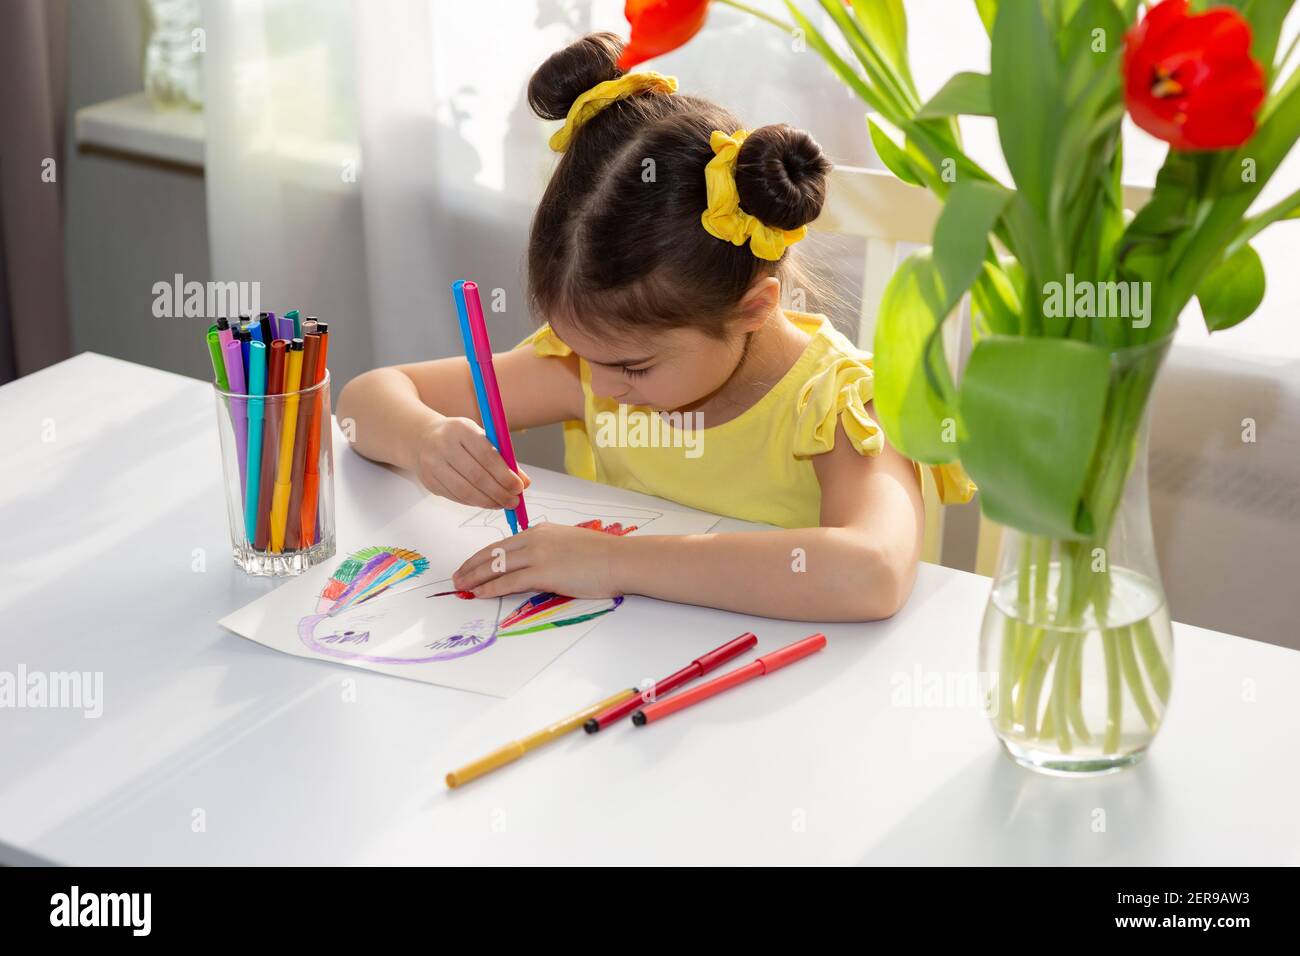 Carina bambina bruna in abito giallo, disegnando con pennarelli colorati sul tavolo bianco Foto Stock